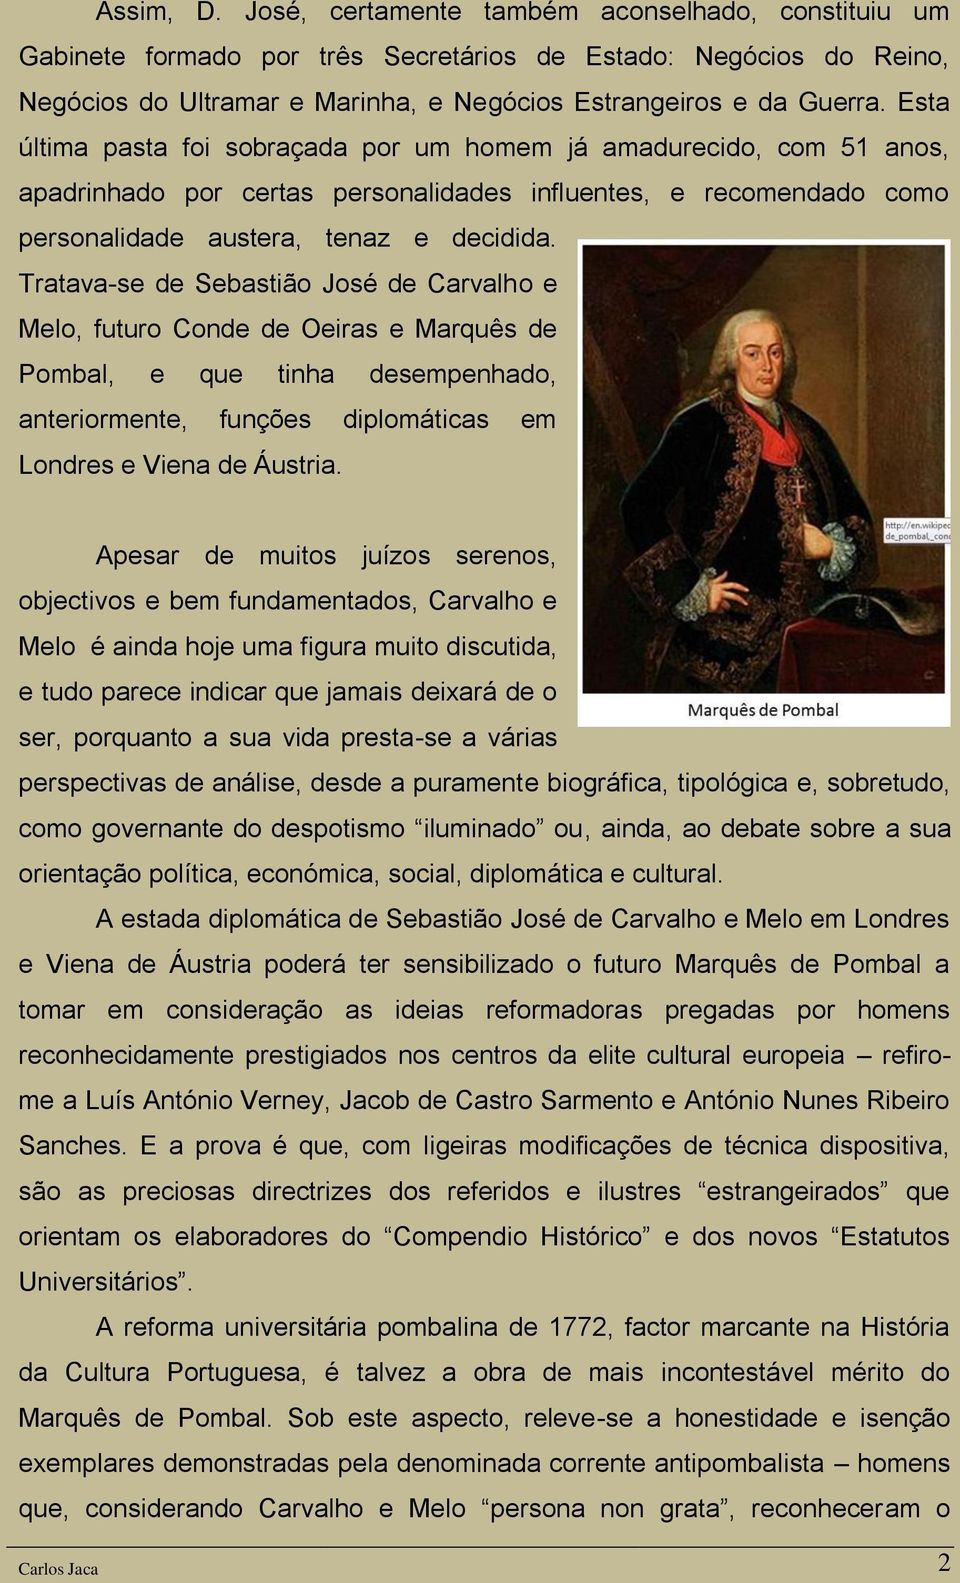 Tratava-se de Sebastião José de Carvalho e Melo, futuro Conde de Oeiras e Marquês de Pombal, e que tinha desempenhado, anteriormente, funções diplomáticas em Londres e Viena de Áustria.